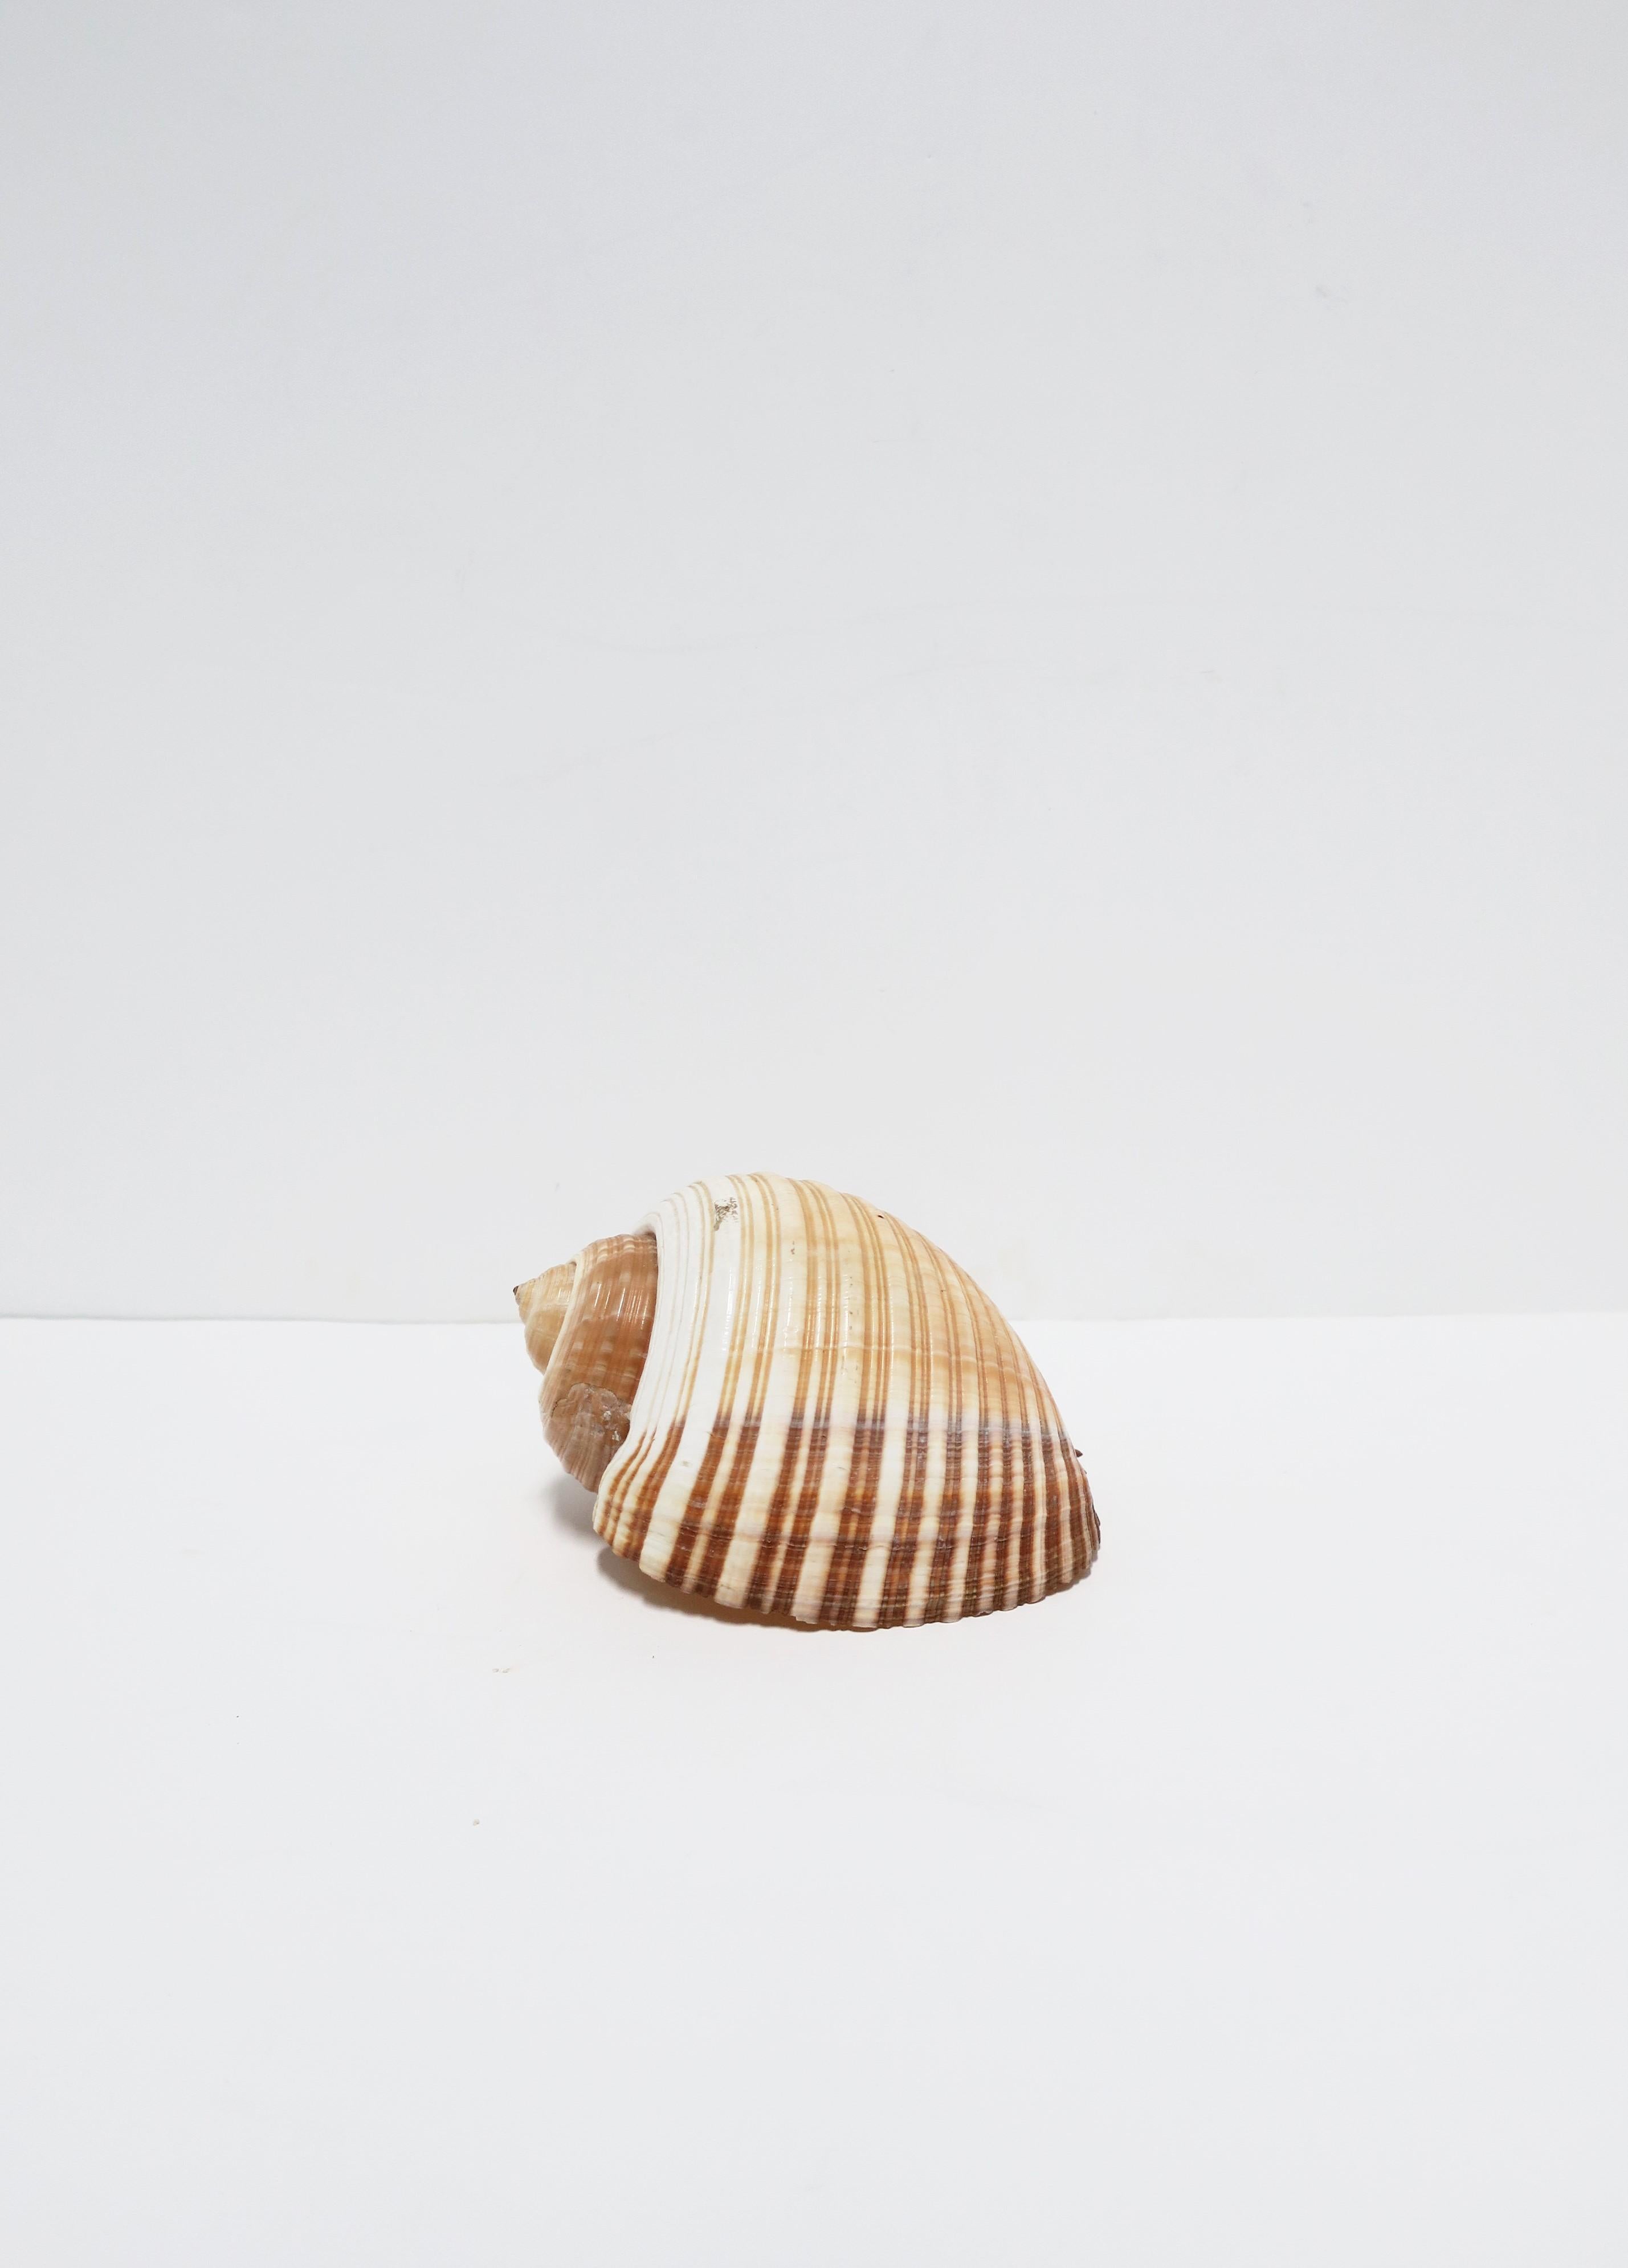 Seashell Sea Shell 2